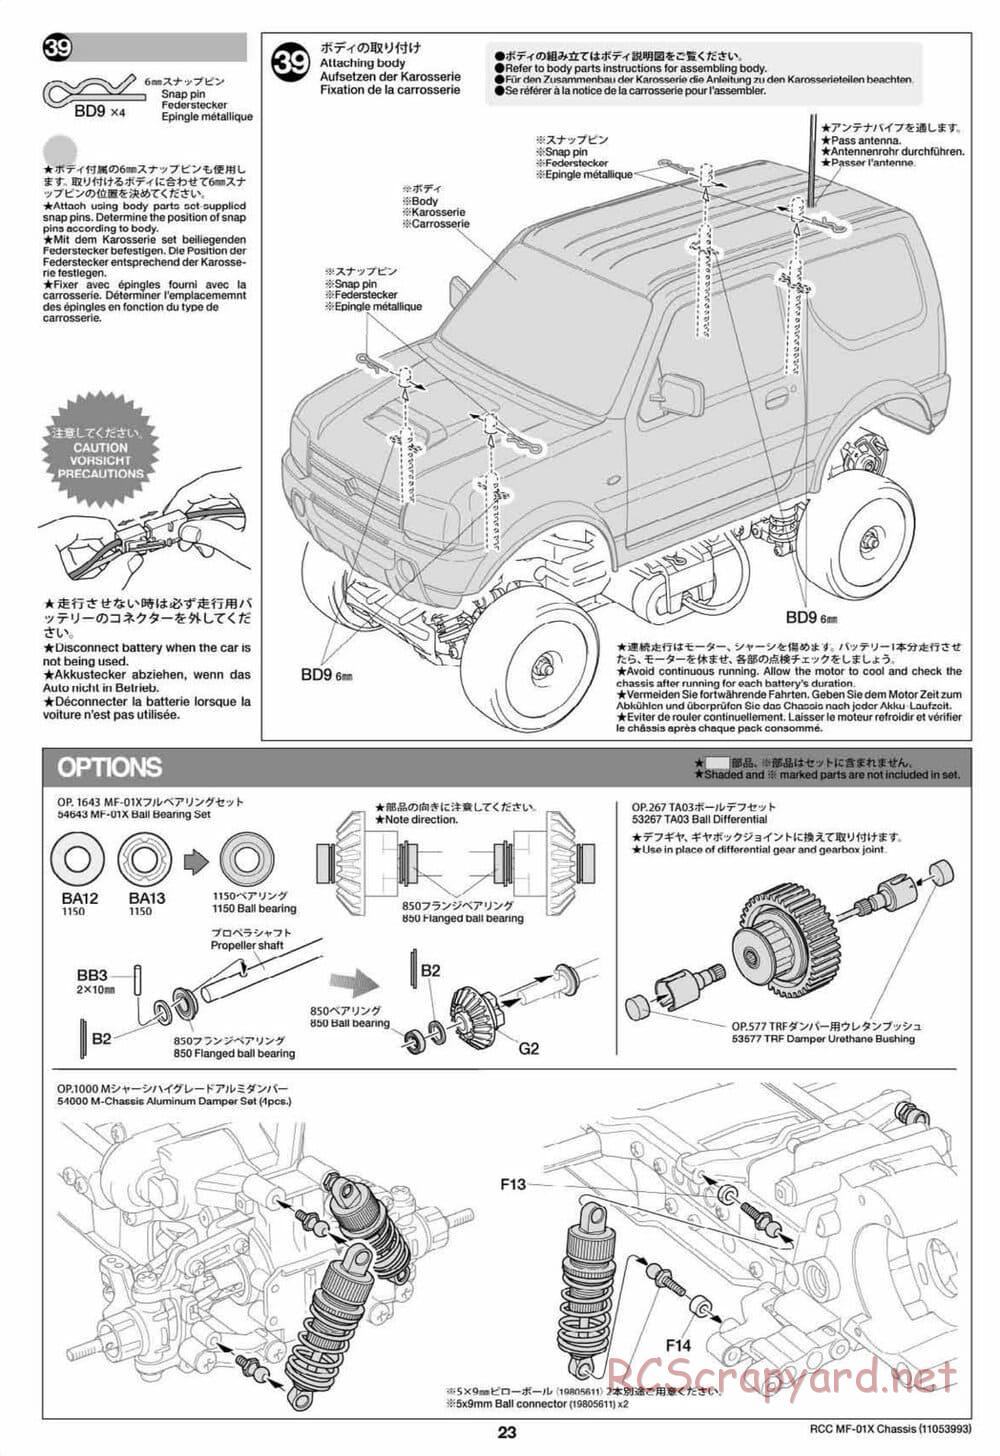 Tamiya - MF-01X Chassis - Manual - Page 23